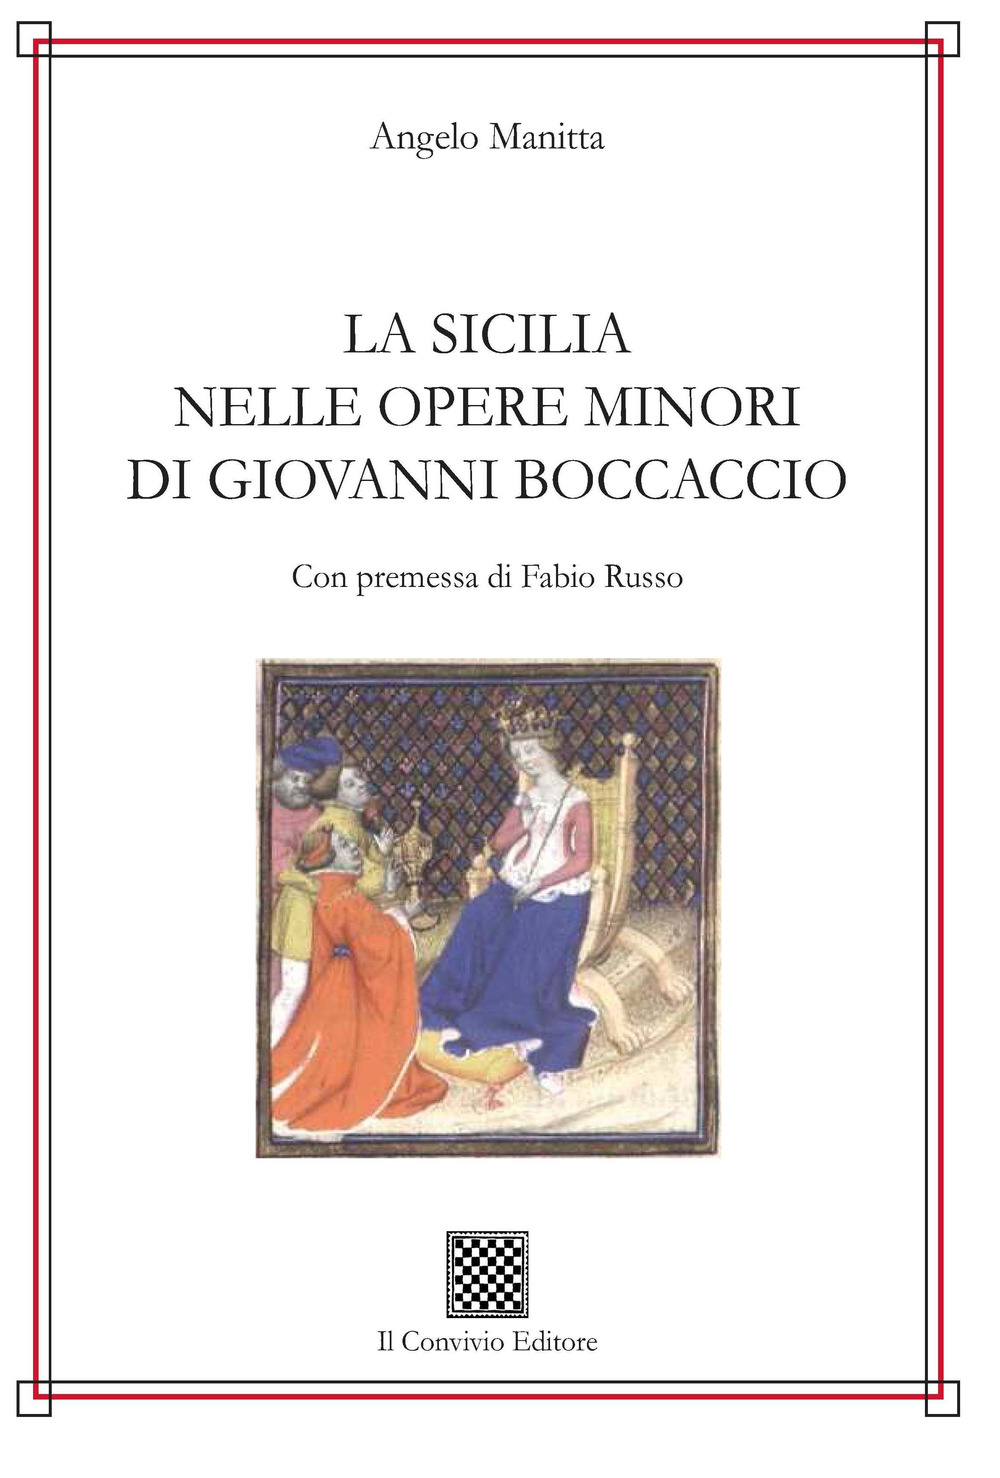 La Sicilia nelle opere minori di Giovanni Boccaccio